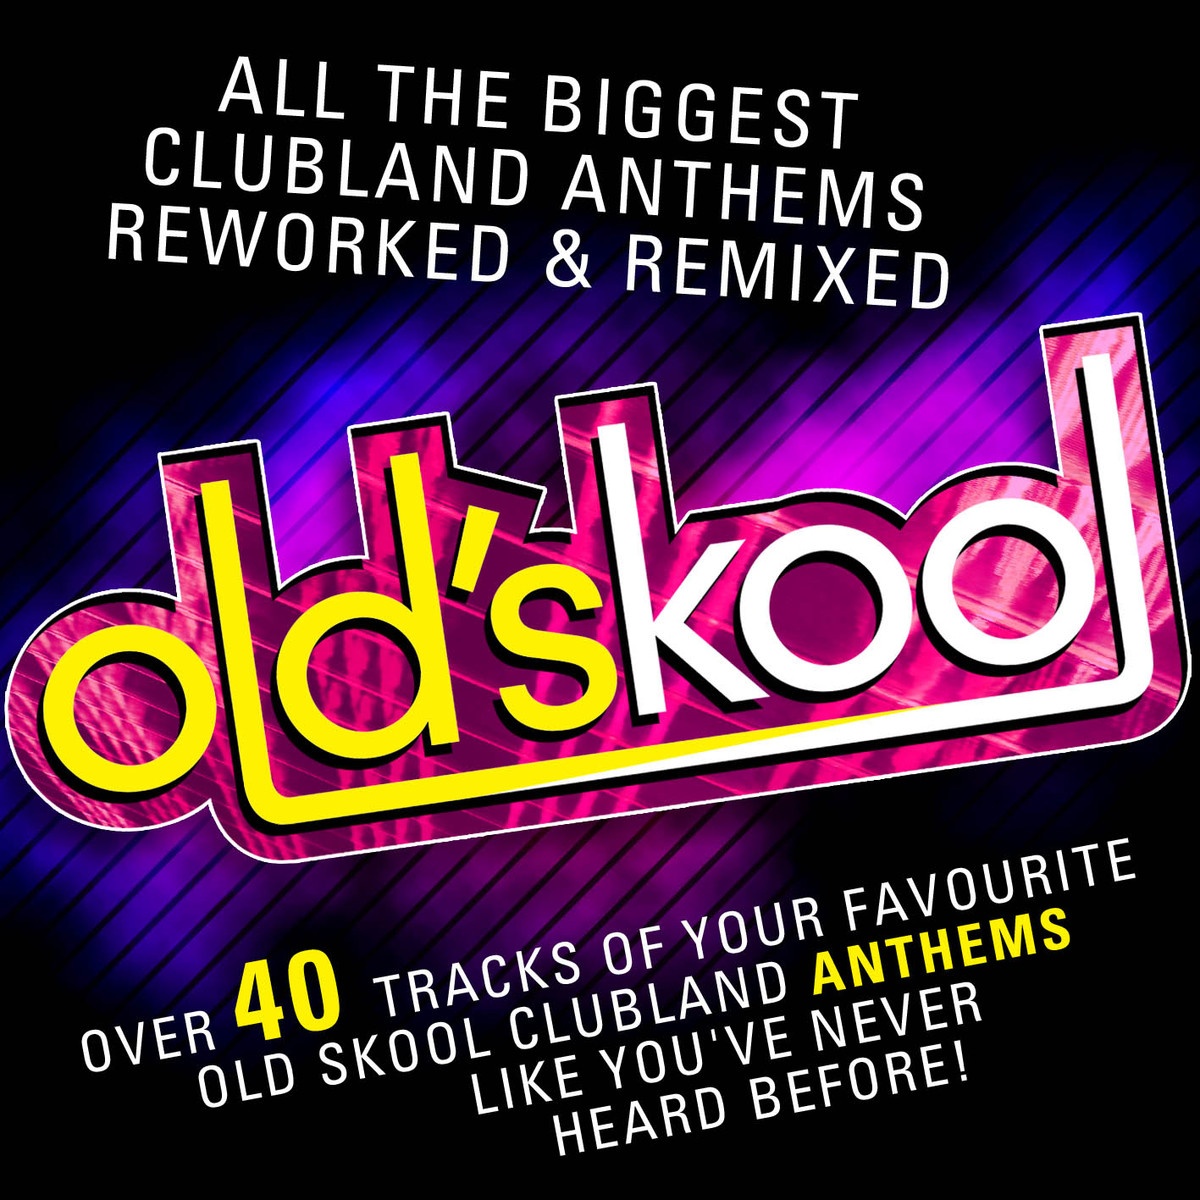 Old's Kool